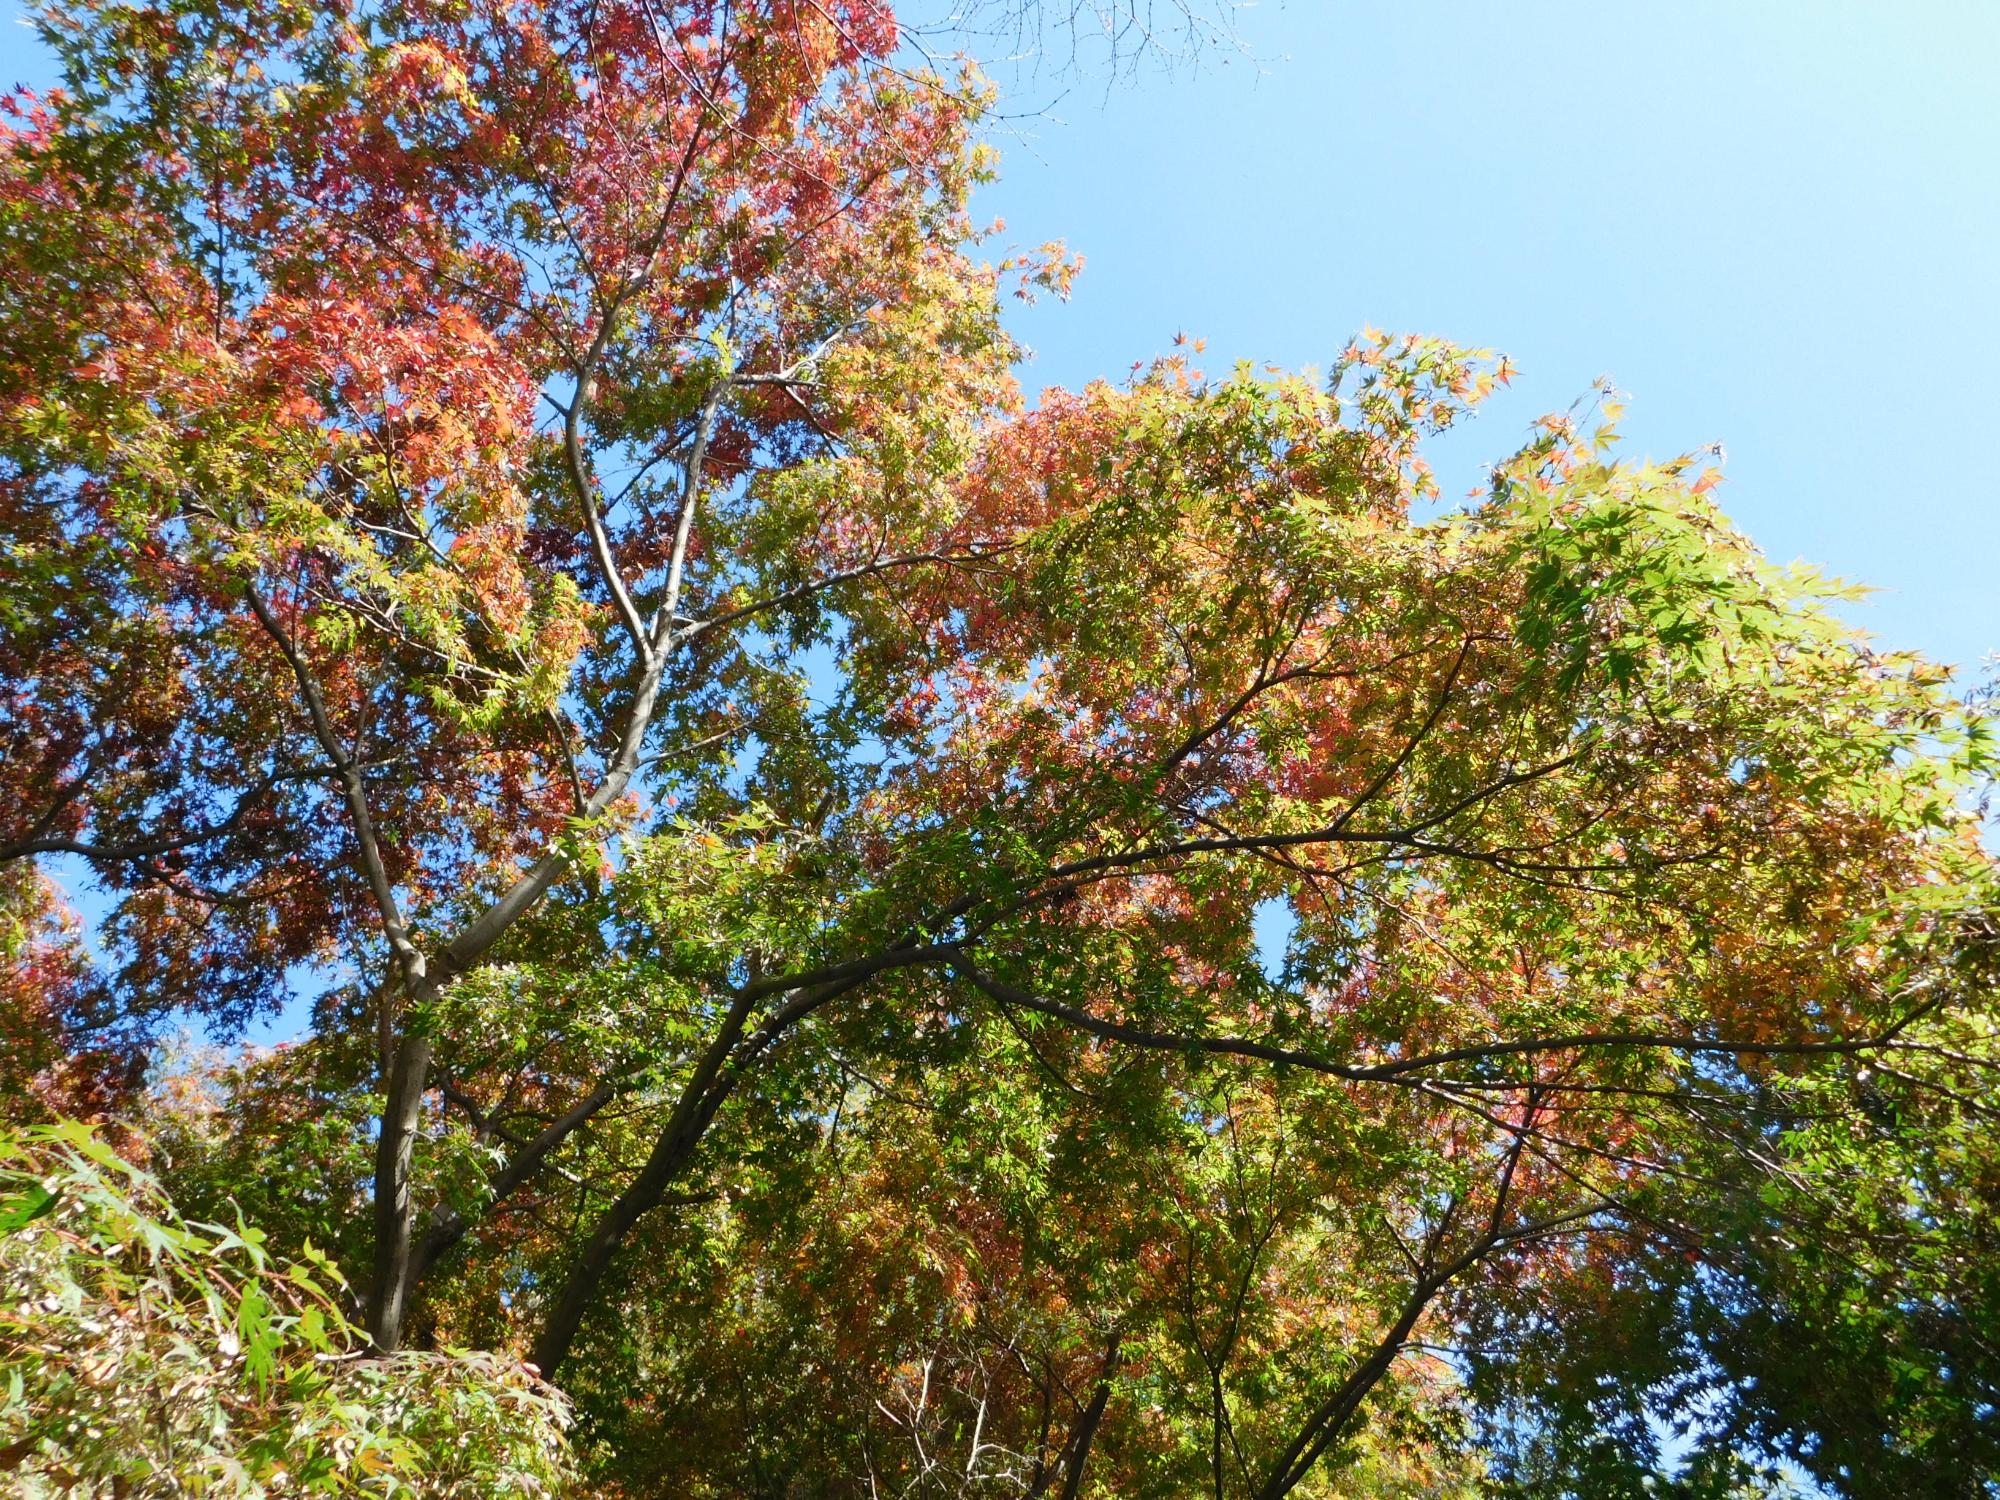 イロハモミジも木の上の方から紅葉が始まってきました。(待合小屋付近)